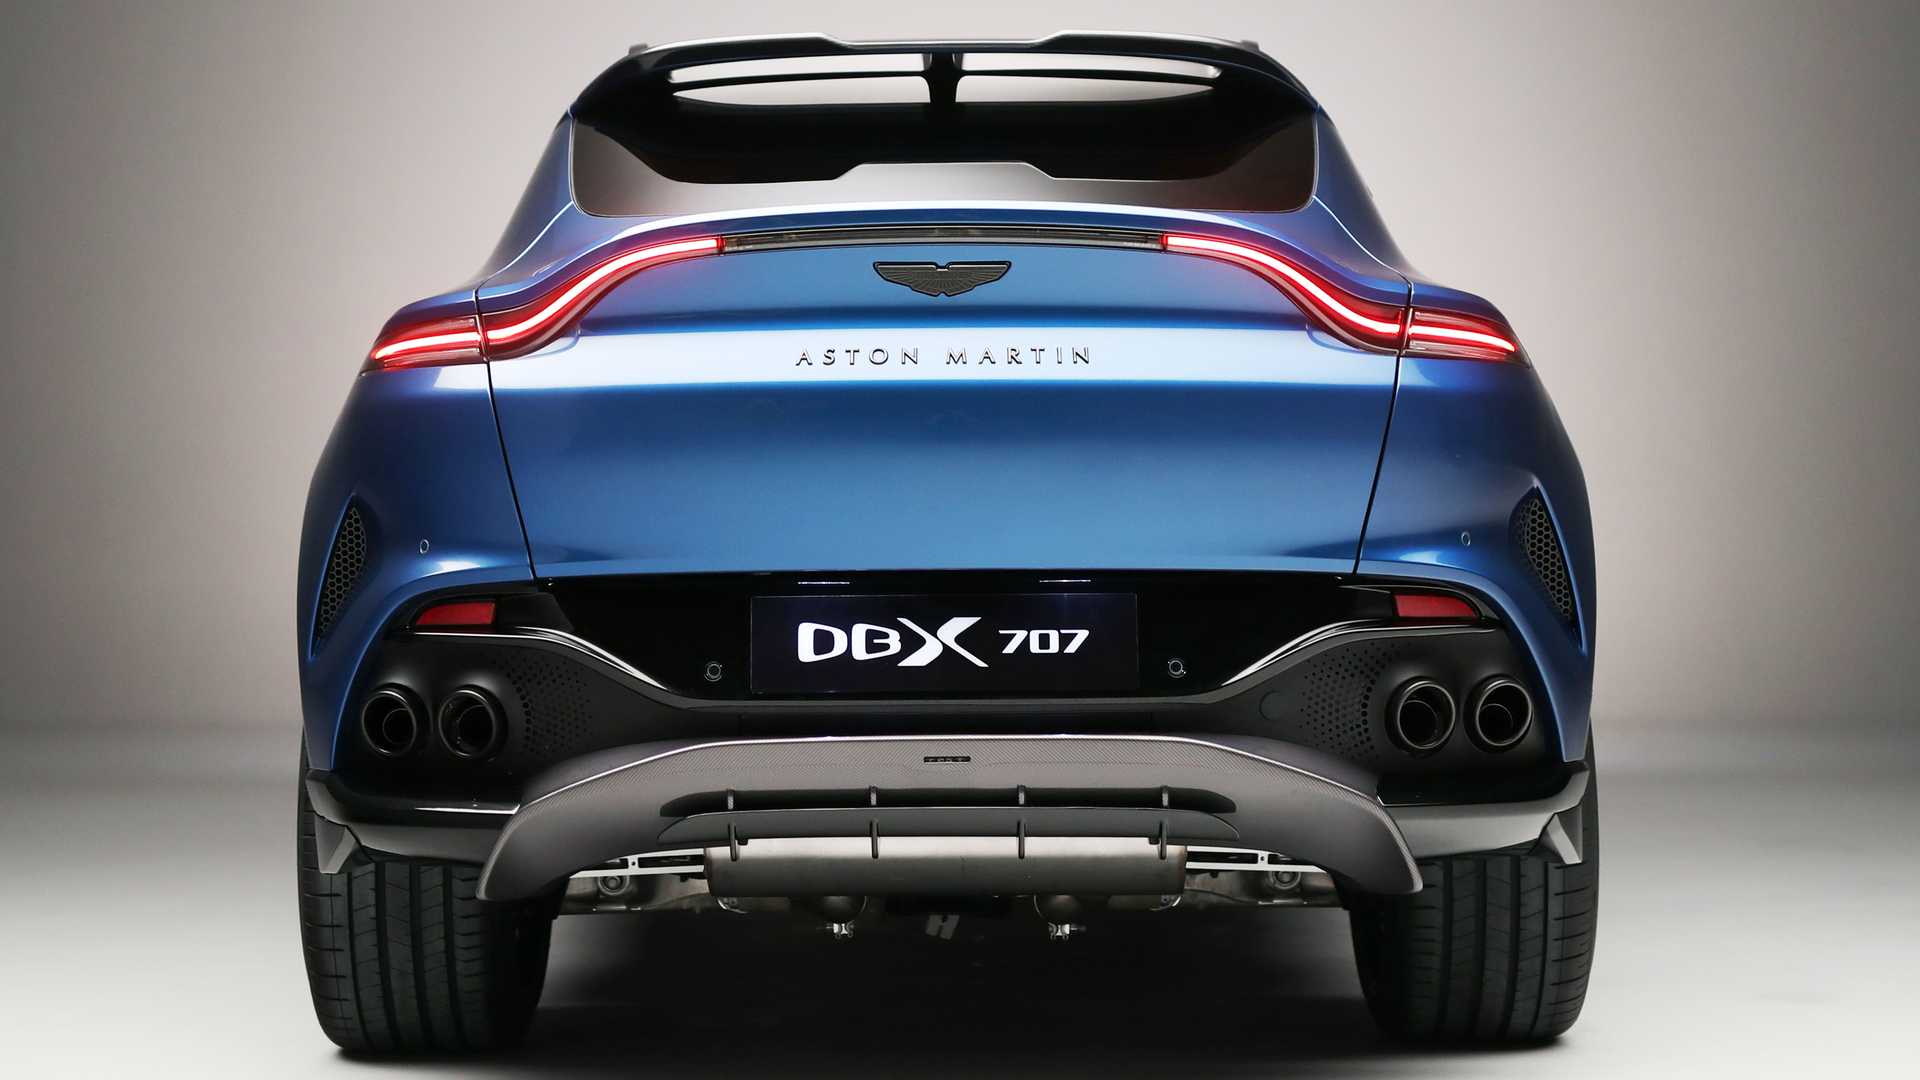 Aston Martin DBX707 ra mắt với 697 mã lực, thách thức Lamborghini Urus aston-martin-dbx707-rear-view.jpeg